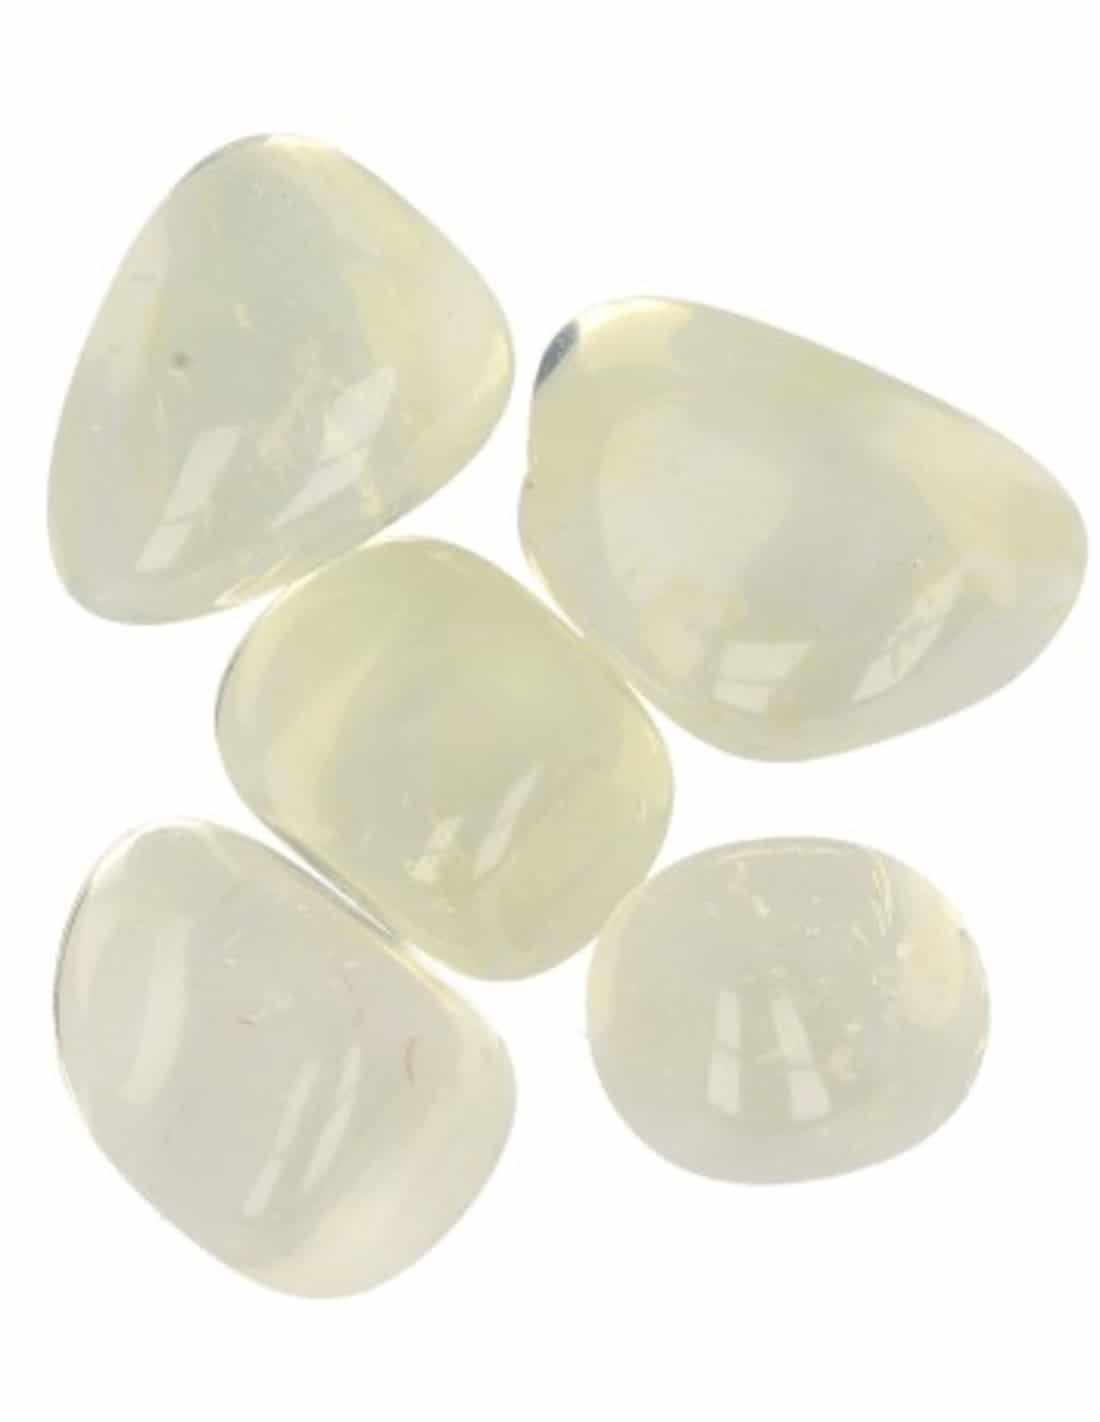 Trommelsteine Opalit-Gelb (50 Gramm) unter Edelsteine & Mineralien - Edelstein Arten - Getrommelte Edelsteine